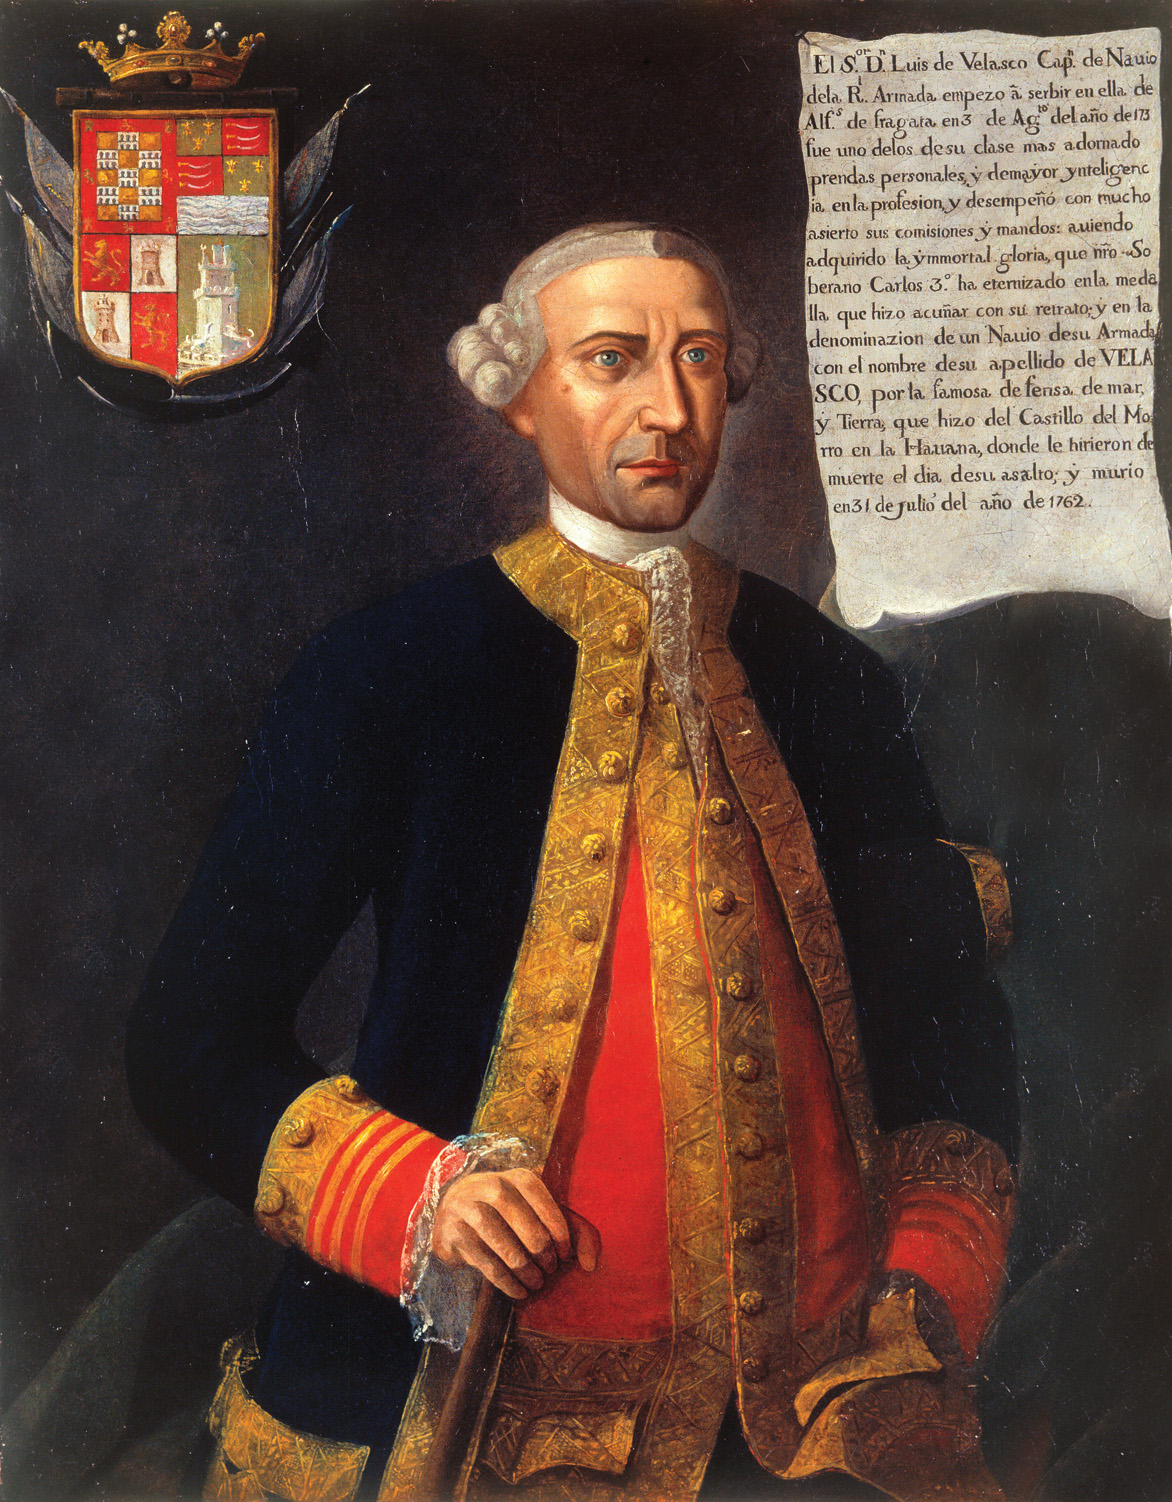 Spanish Captain Don Luis de Velasco